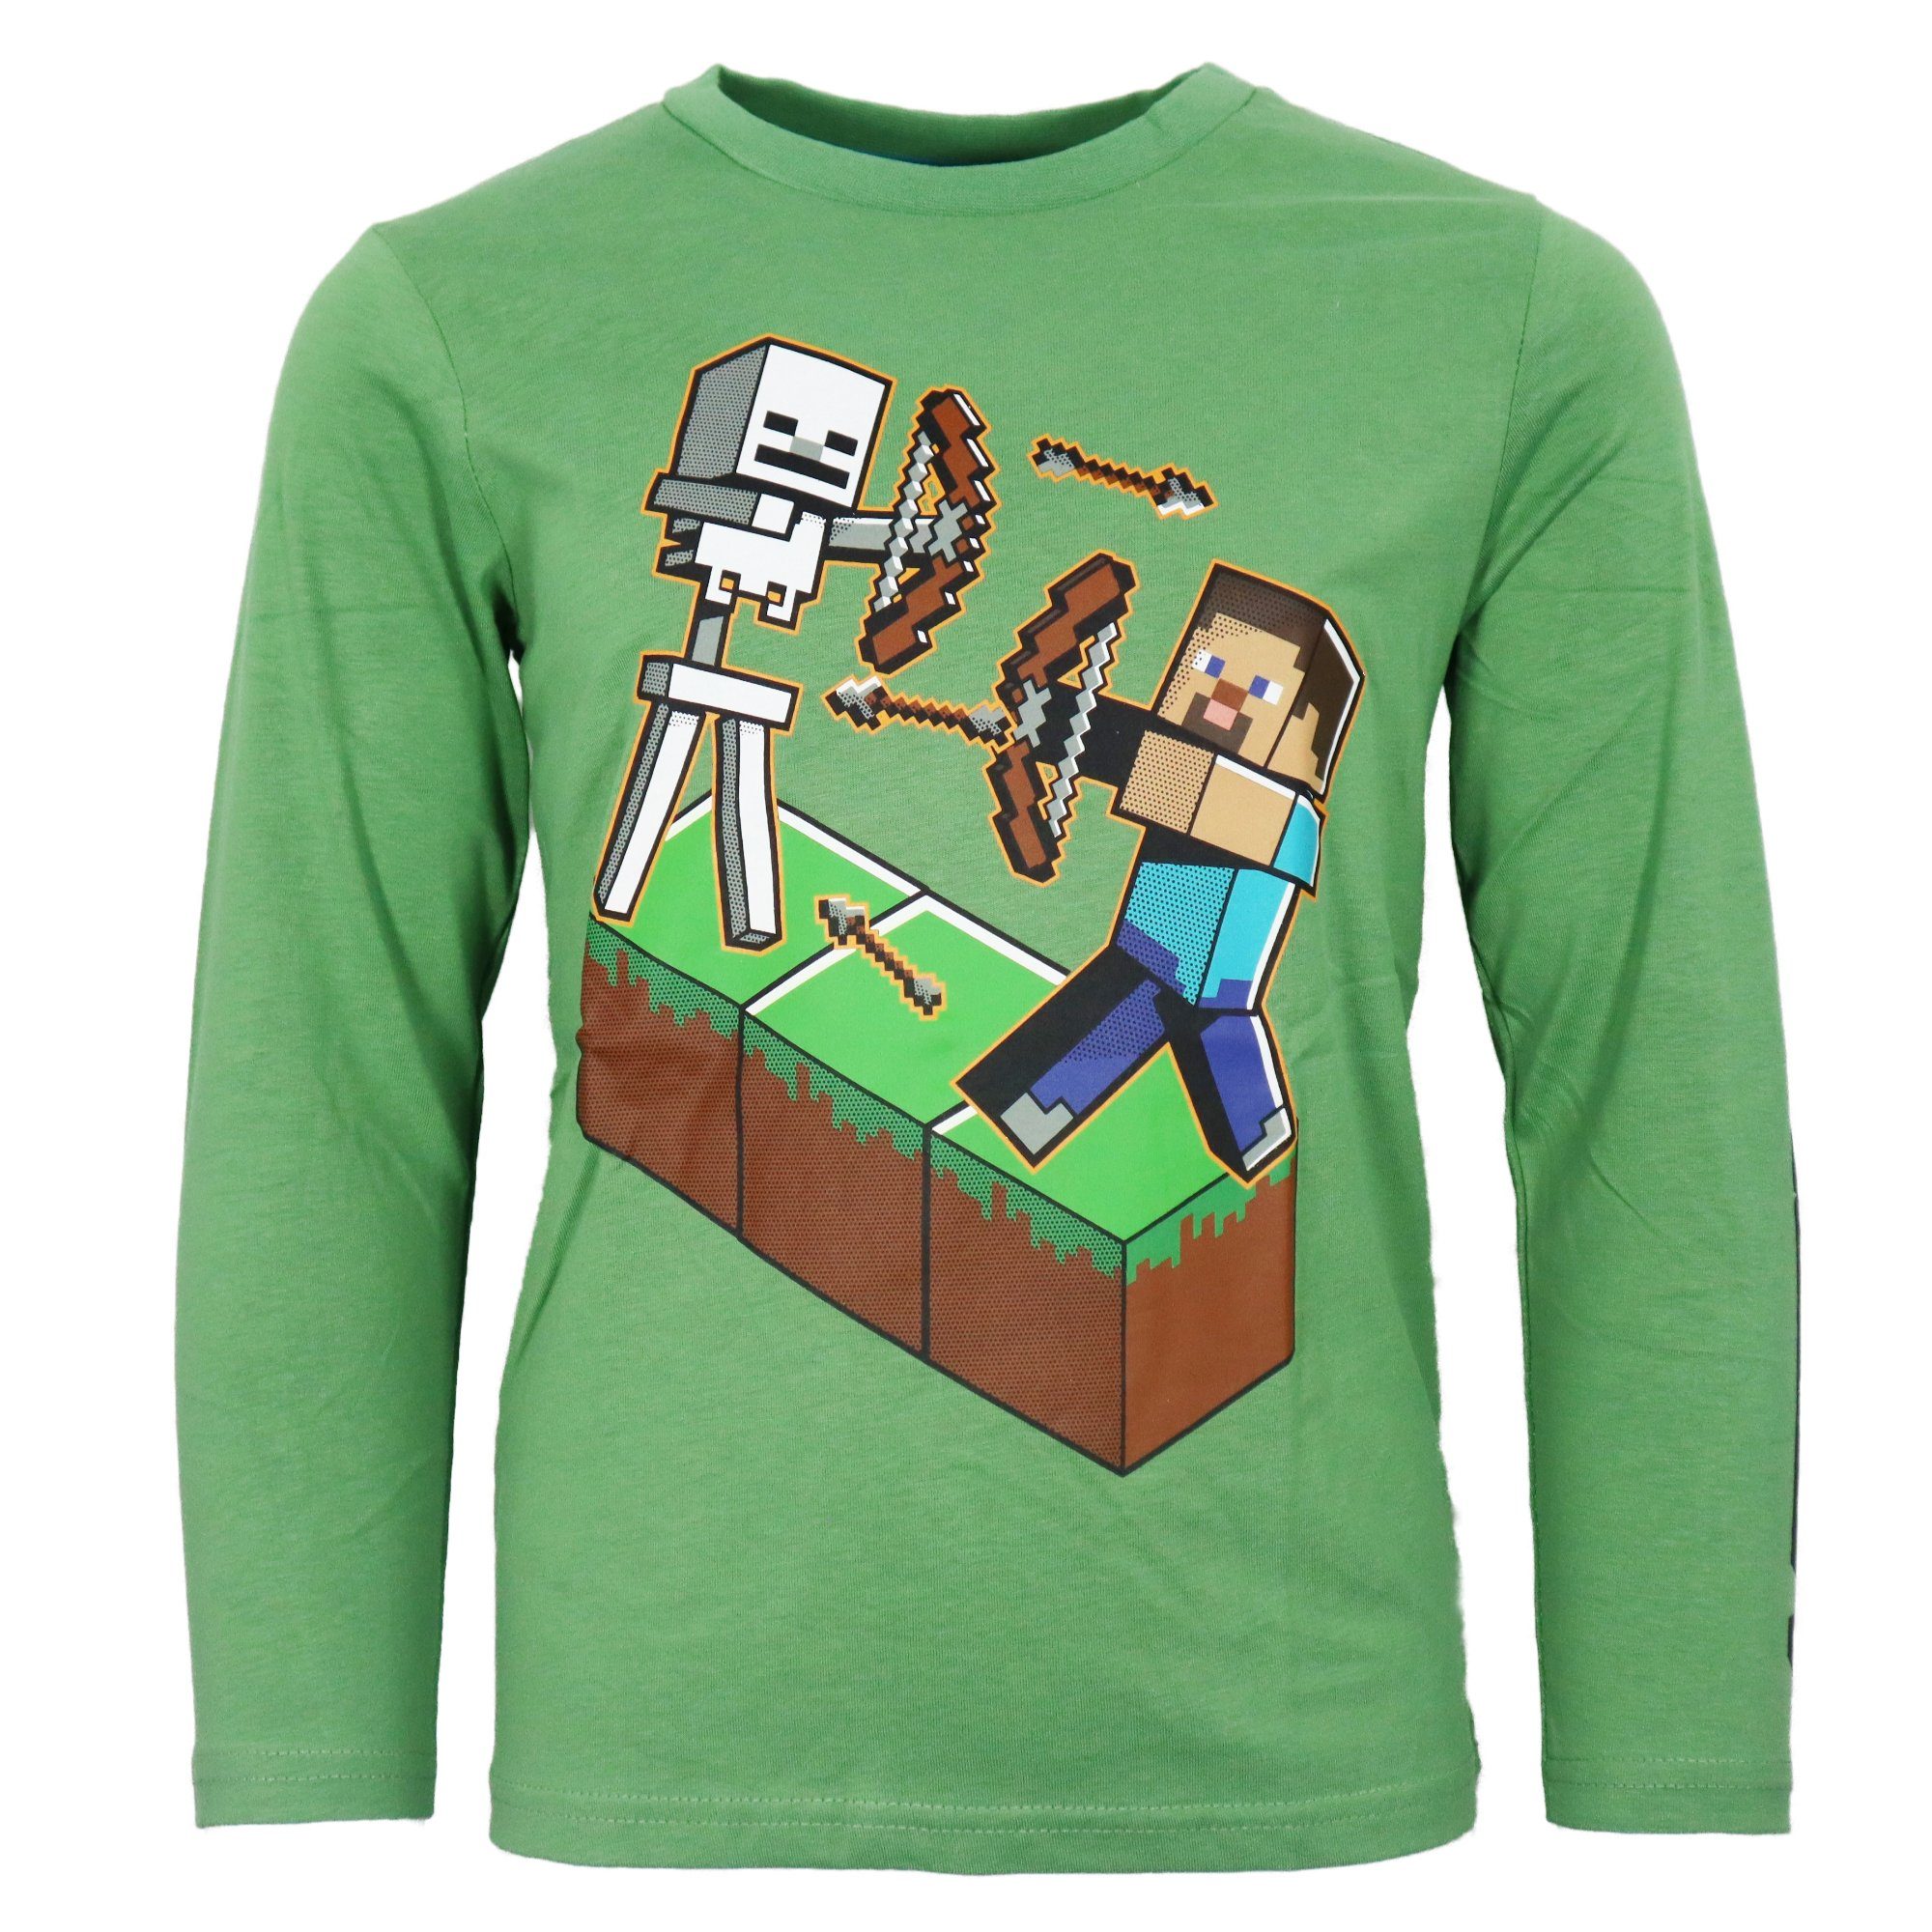 Sehr beliebte Neuheiten Minecraft Langarmshirt 116 Skelett 152, Shirt Minecraft Steve Gr. 100% Jungen Kinder bis Langar Baumwolle